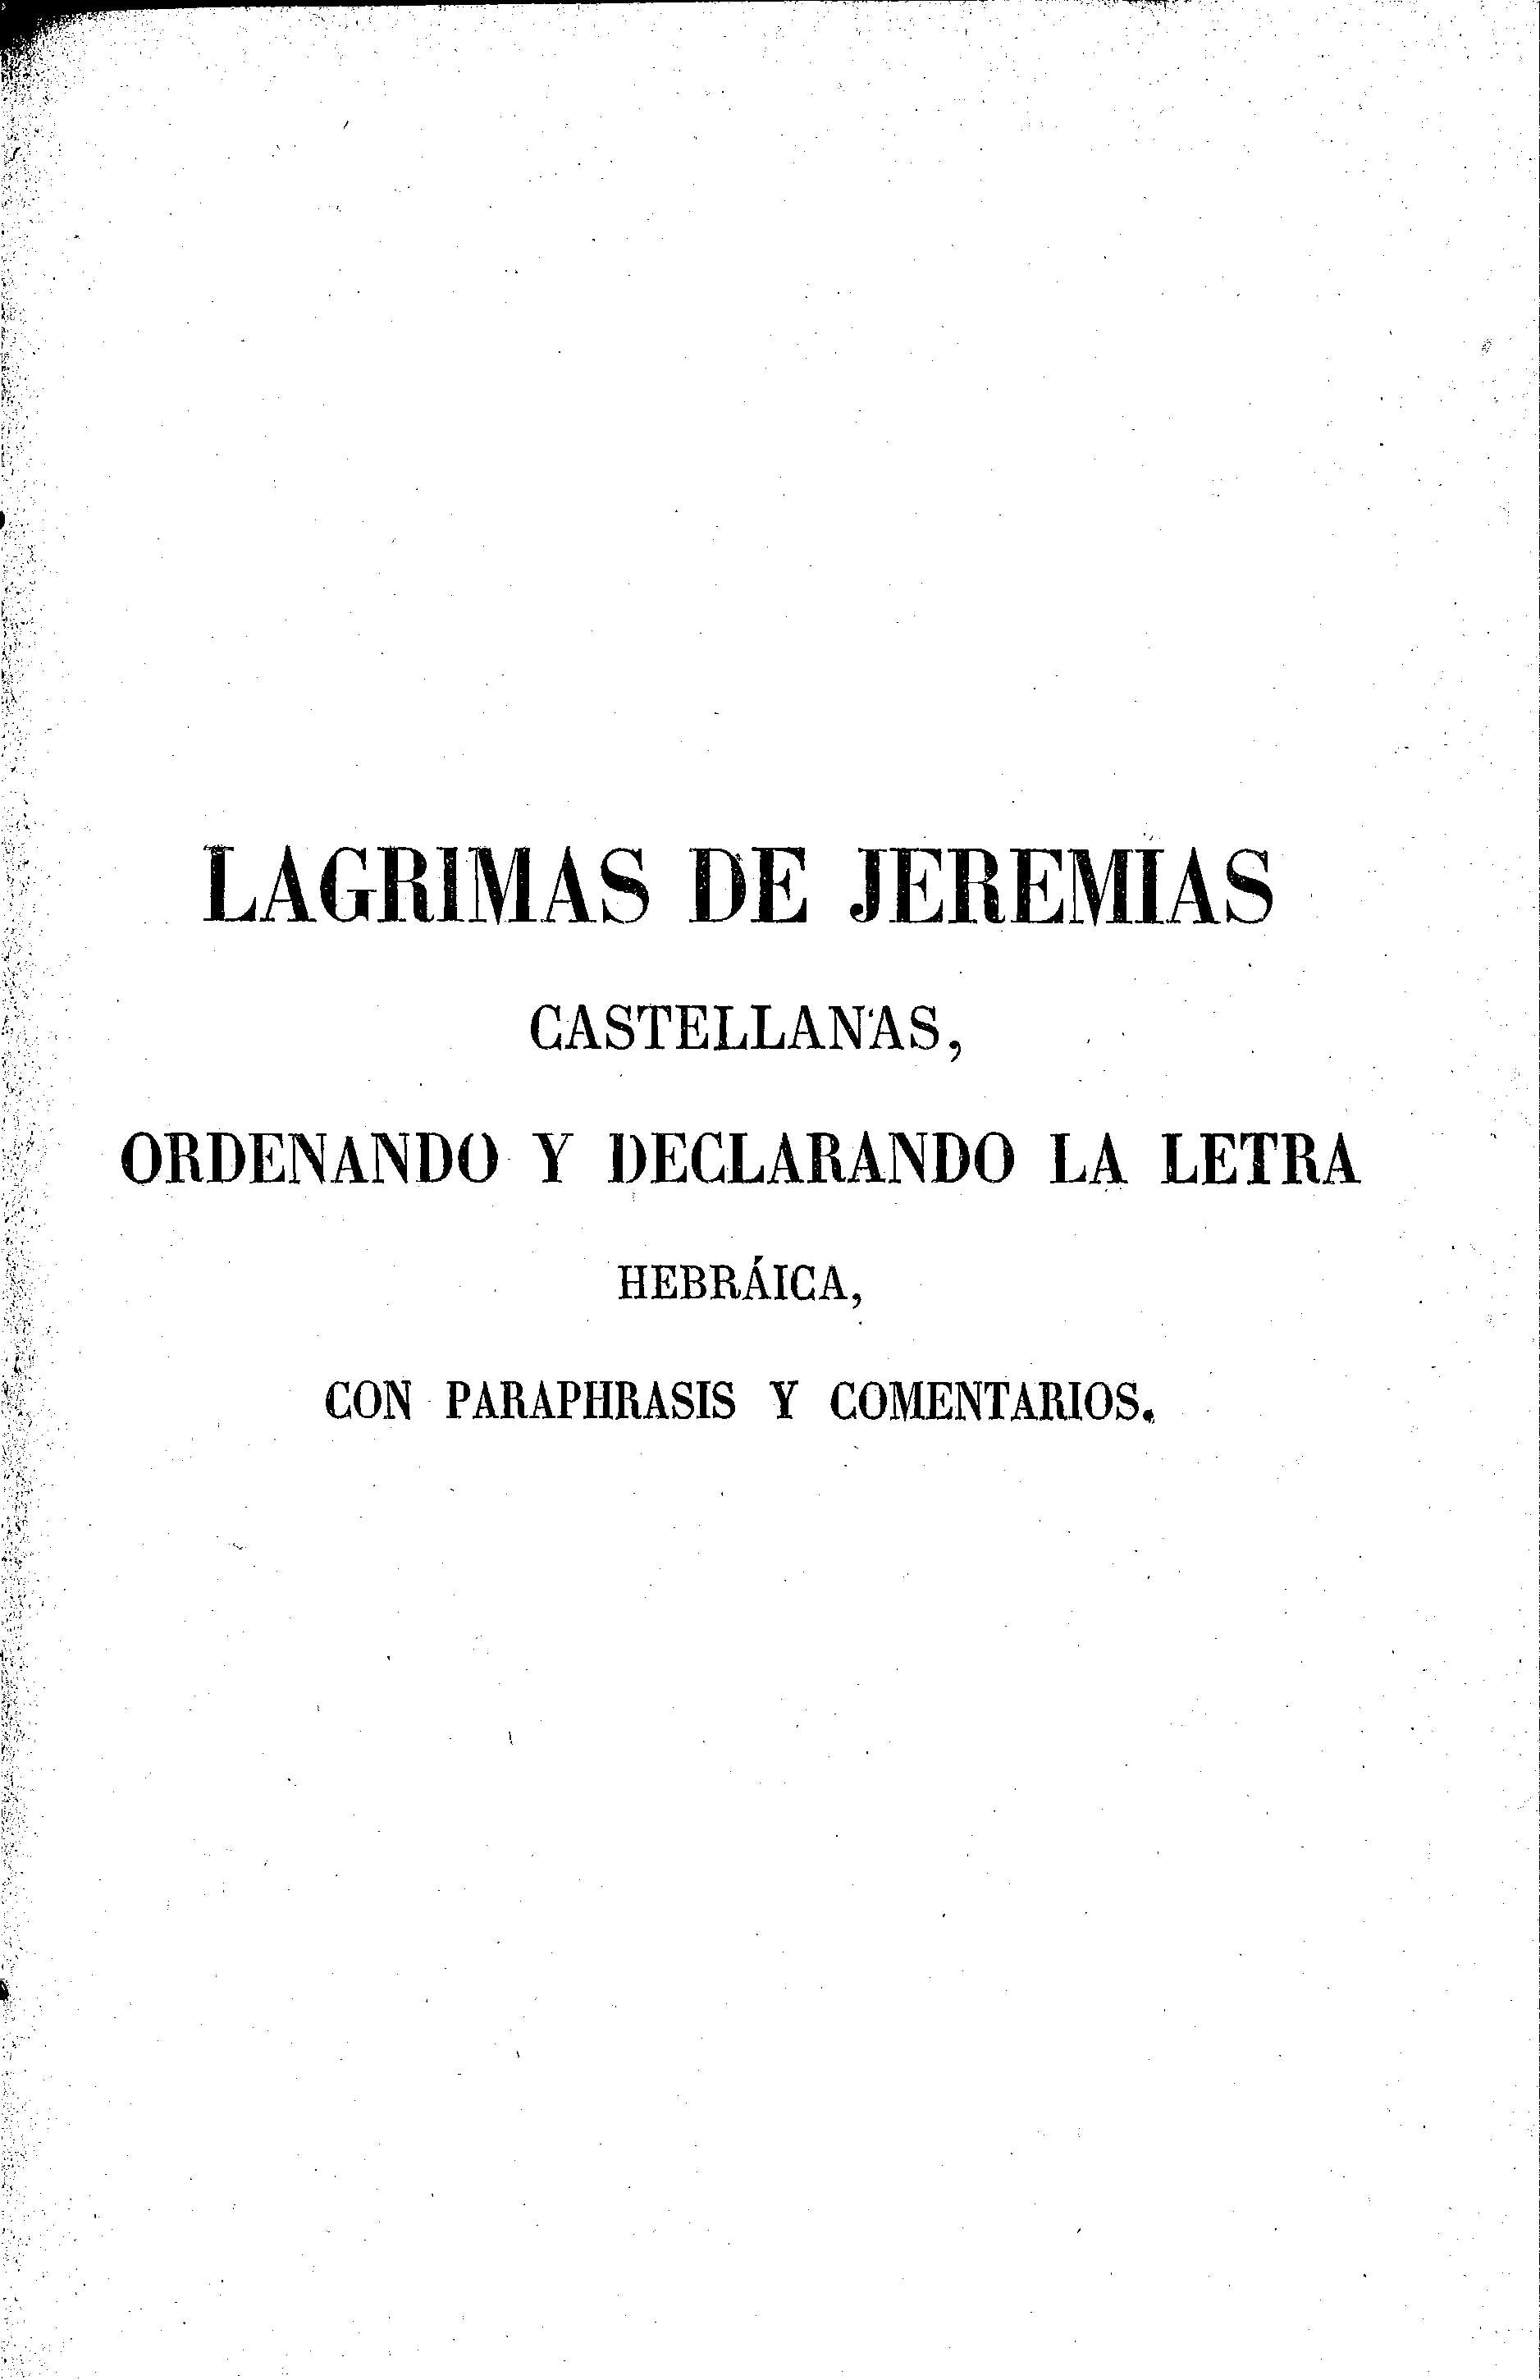 Lagrimas de Jeremías castellanas, ordenando y declarando la letra hebráica, con paraphrasis y comentarios.